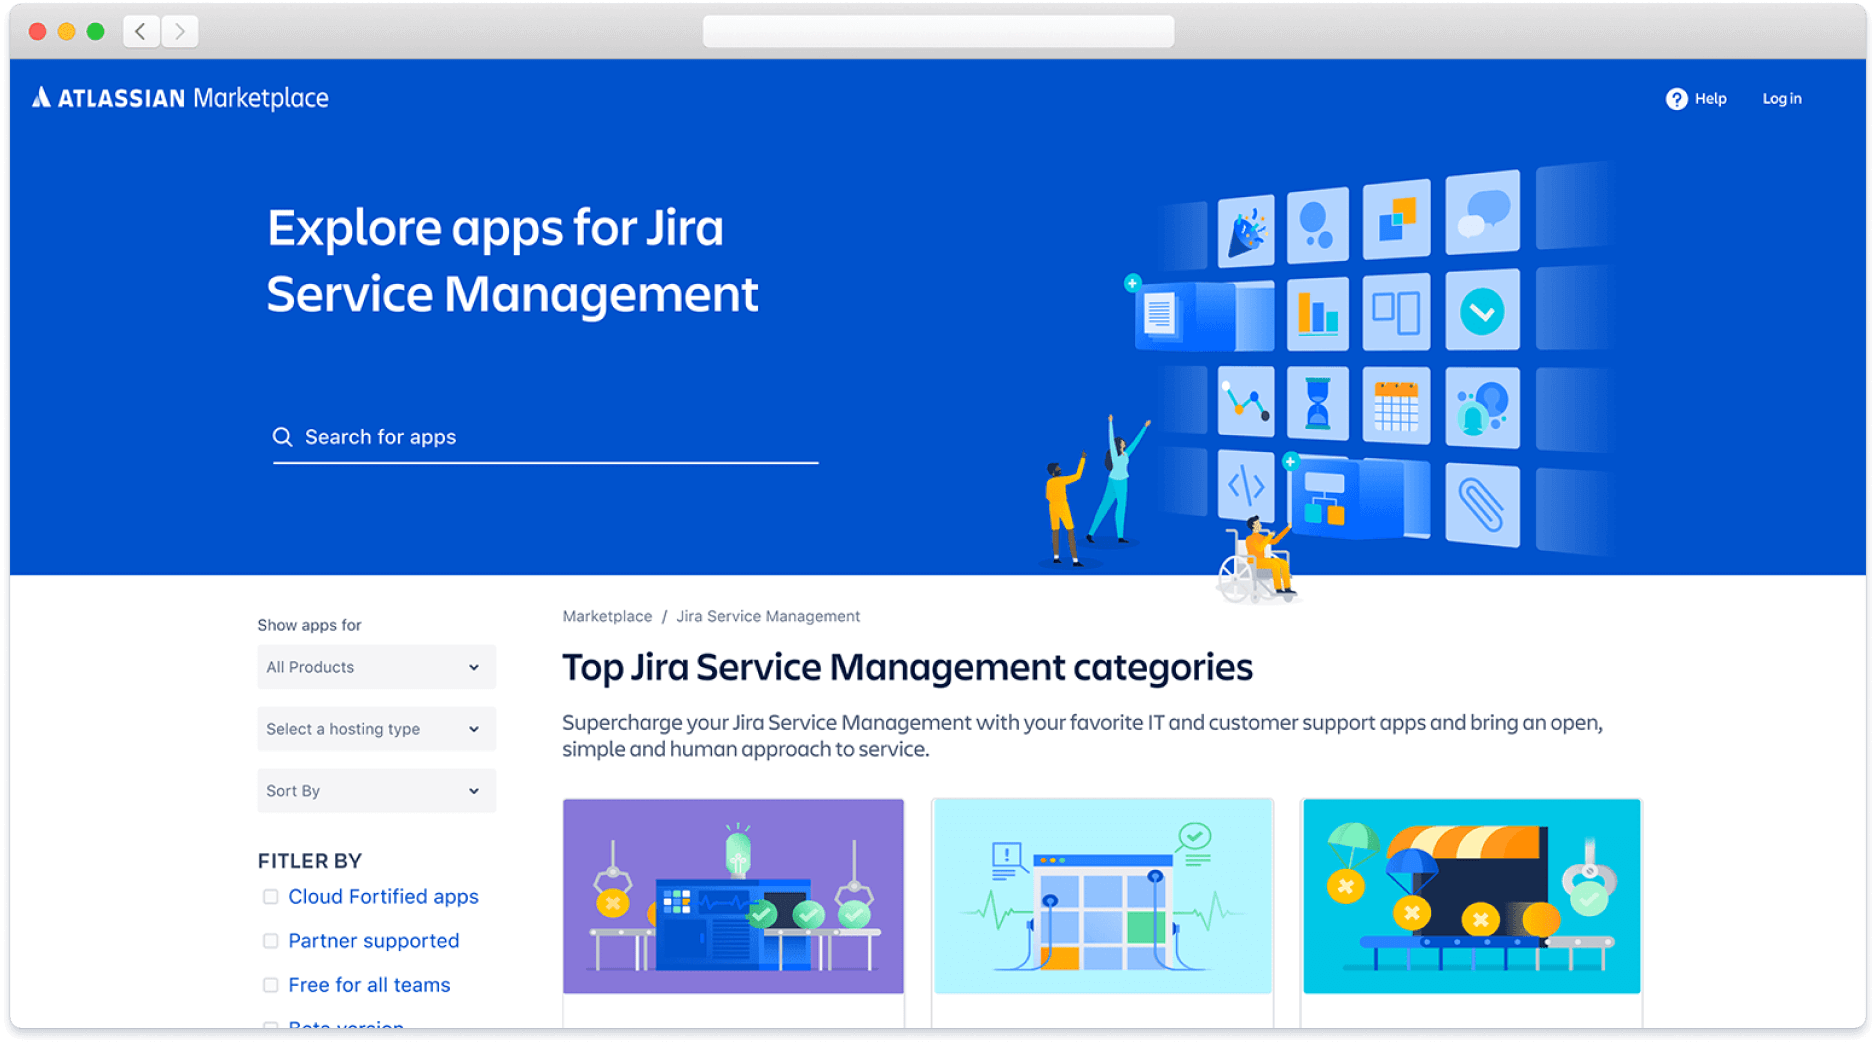 Découvrez les apps pour Jira Service Management sur l'Atlassian Marketplace